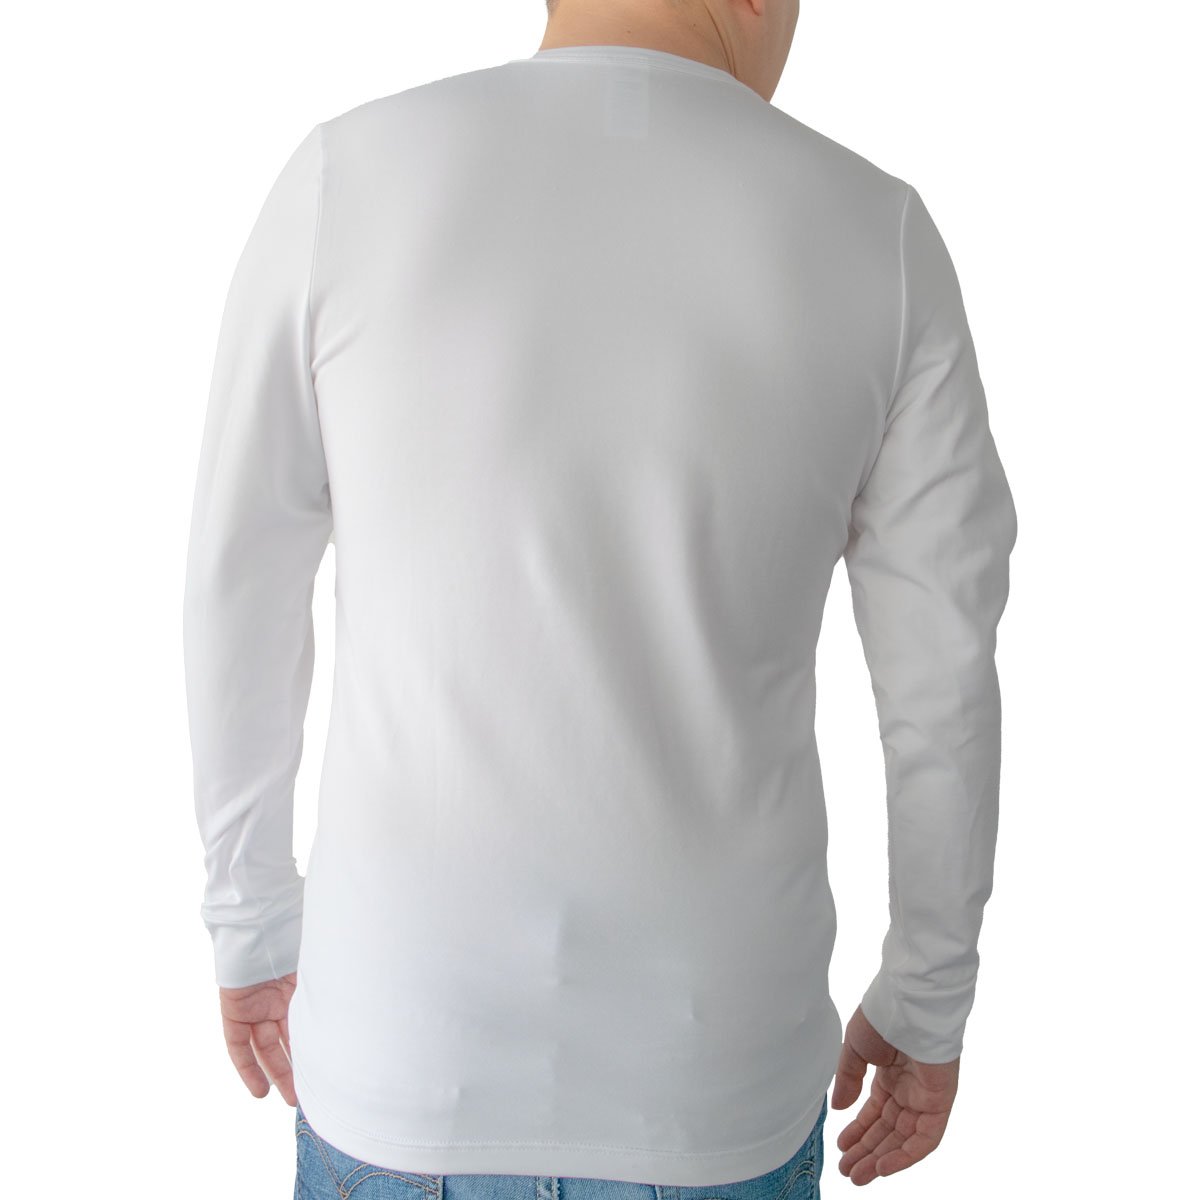 Camiseta Blanca Sin Mangas para Niño Oscar Hackman Modelo Ohoic2